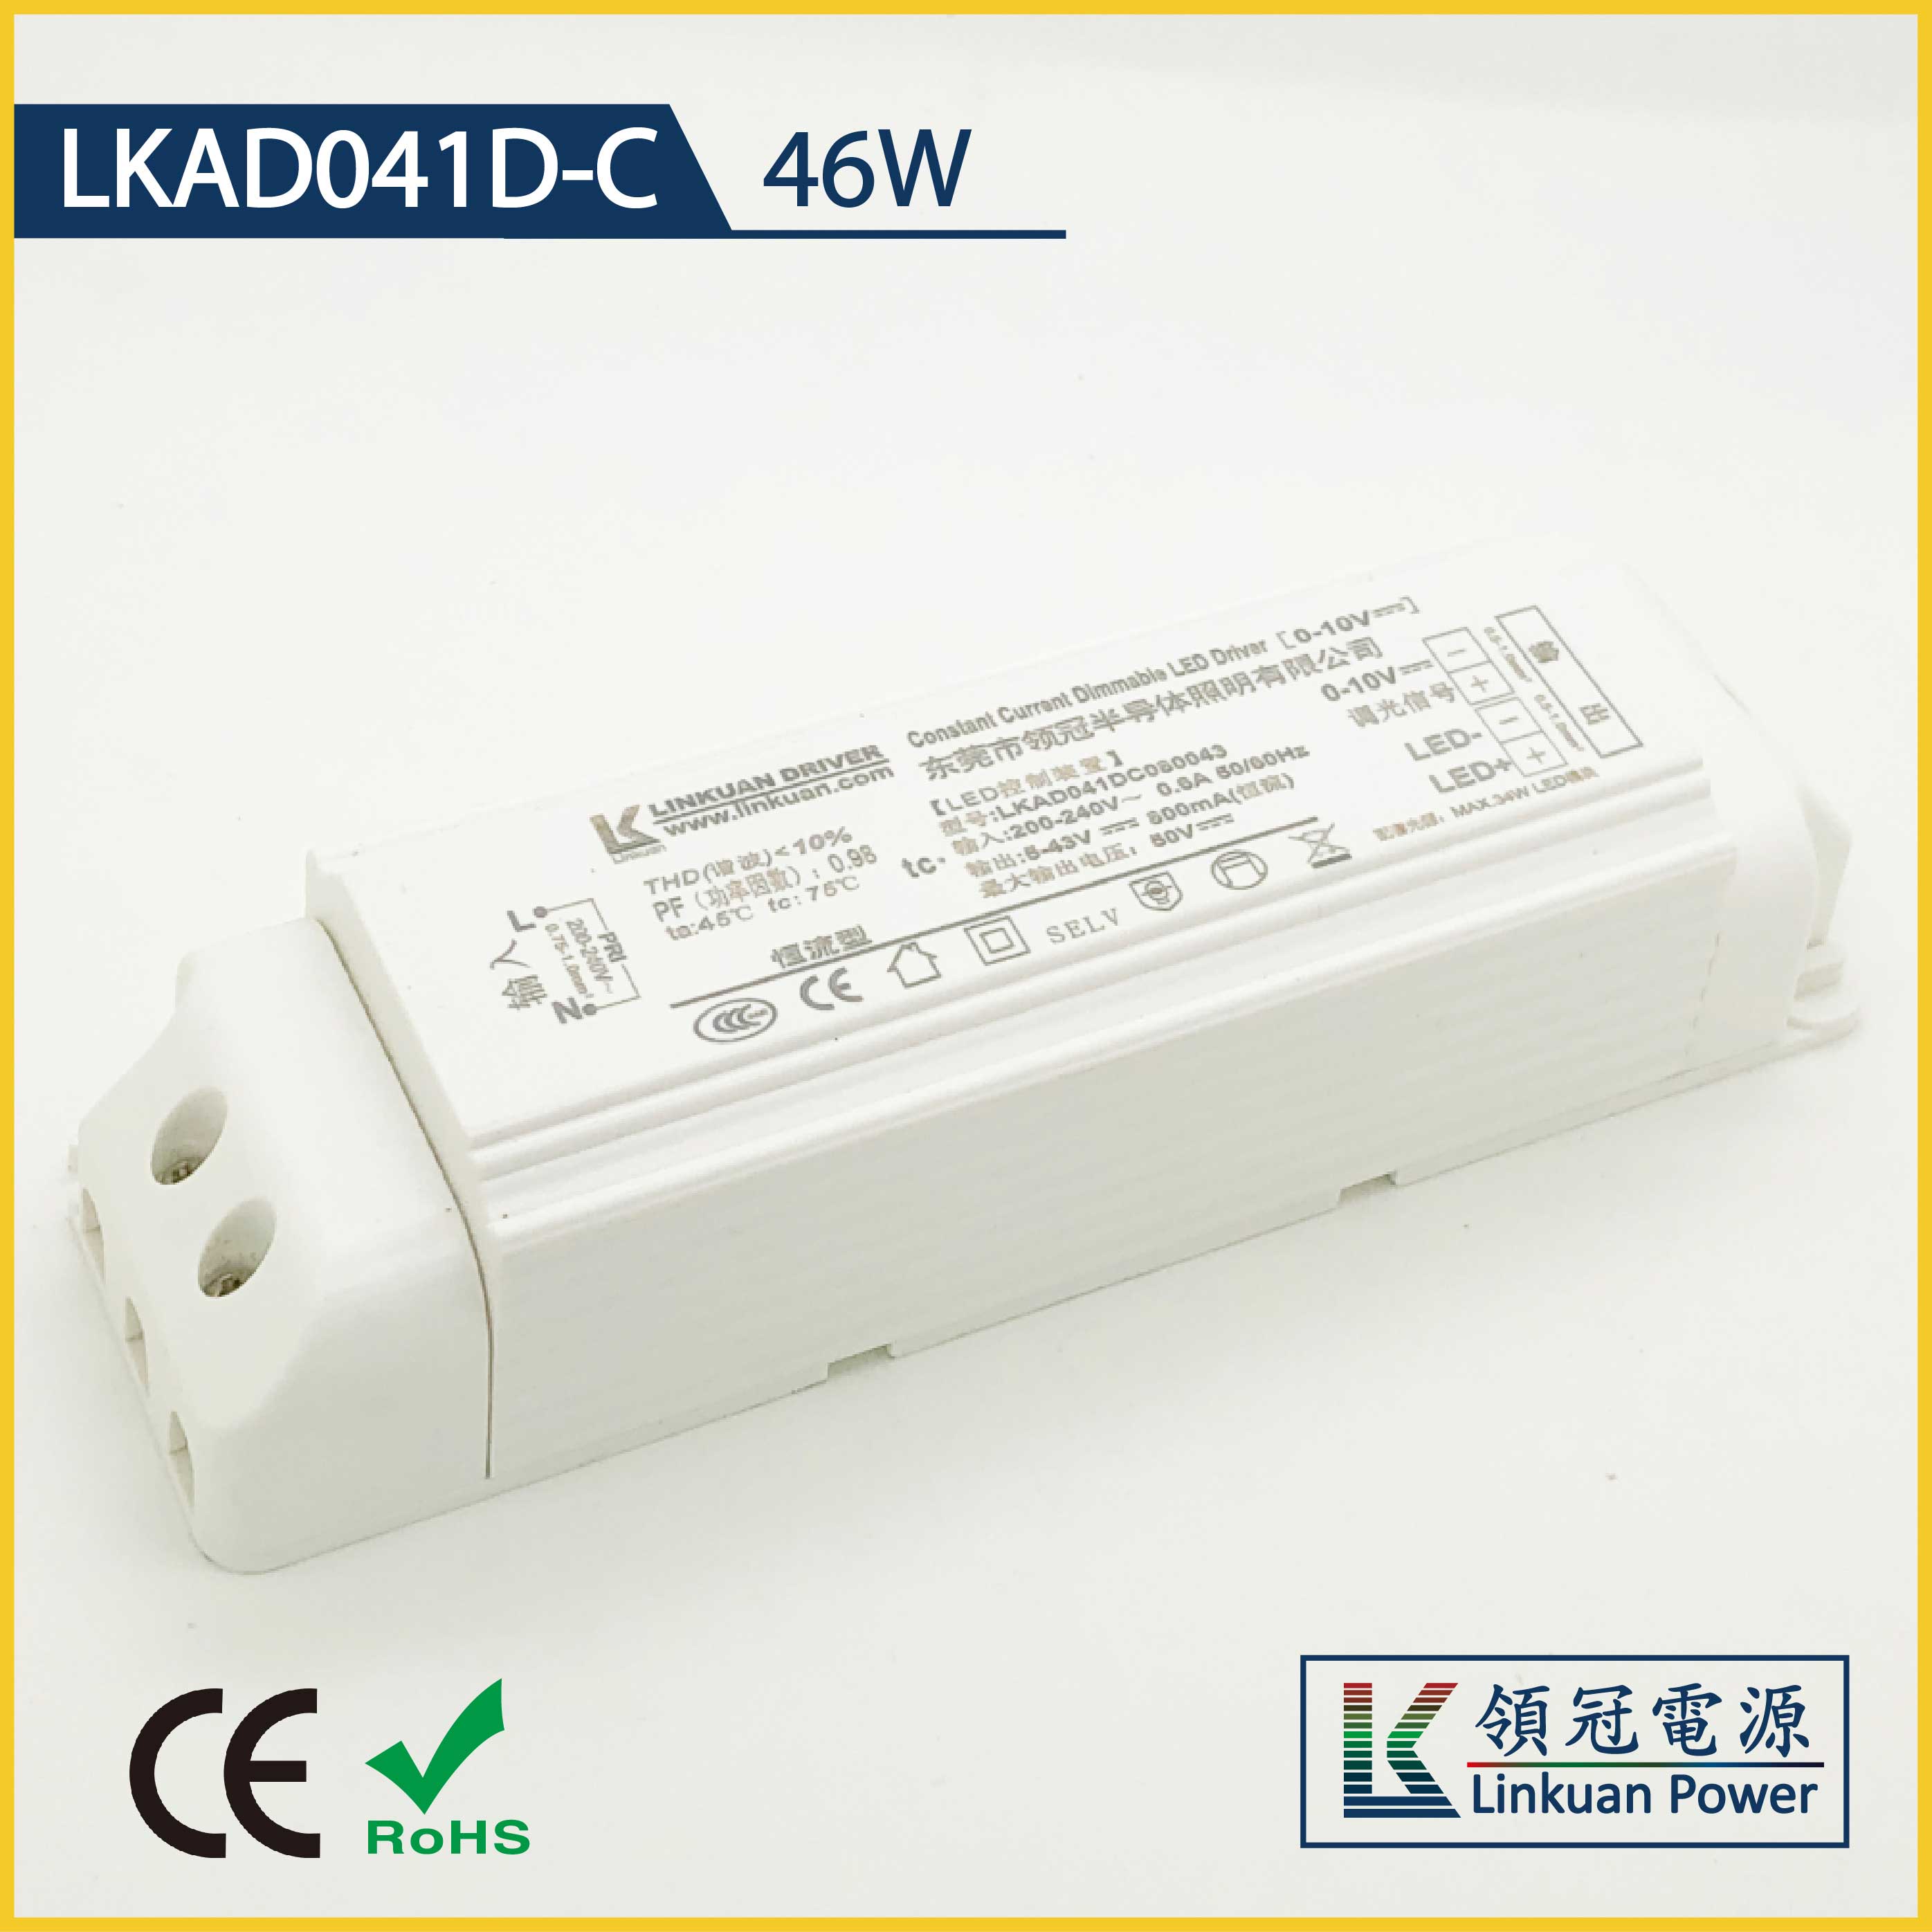 LKAD041D-C 46W 5-42V 1100mA 0-10V Dimming LED drivers